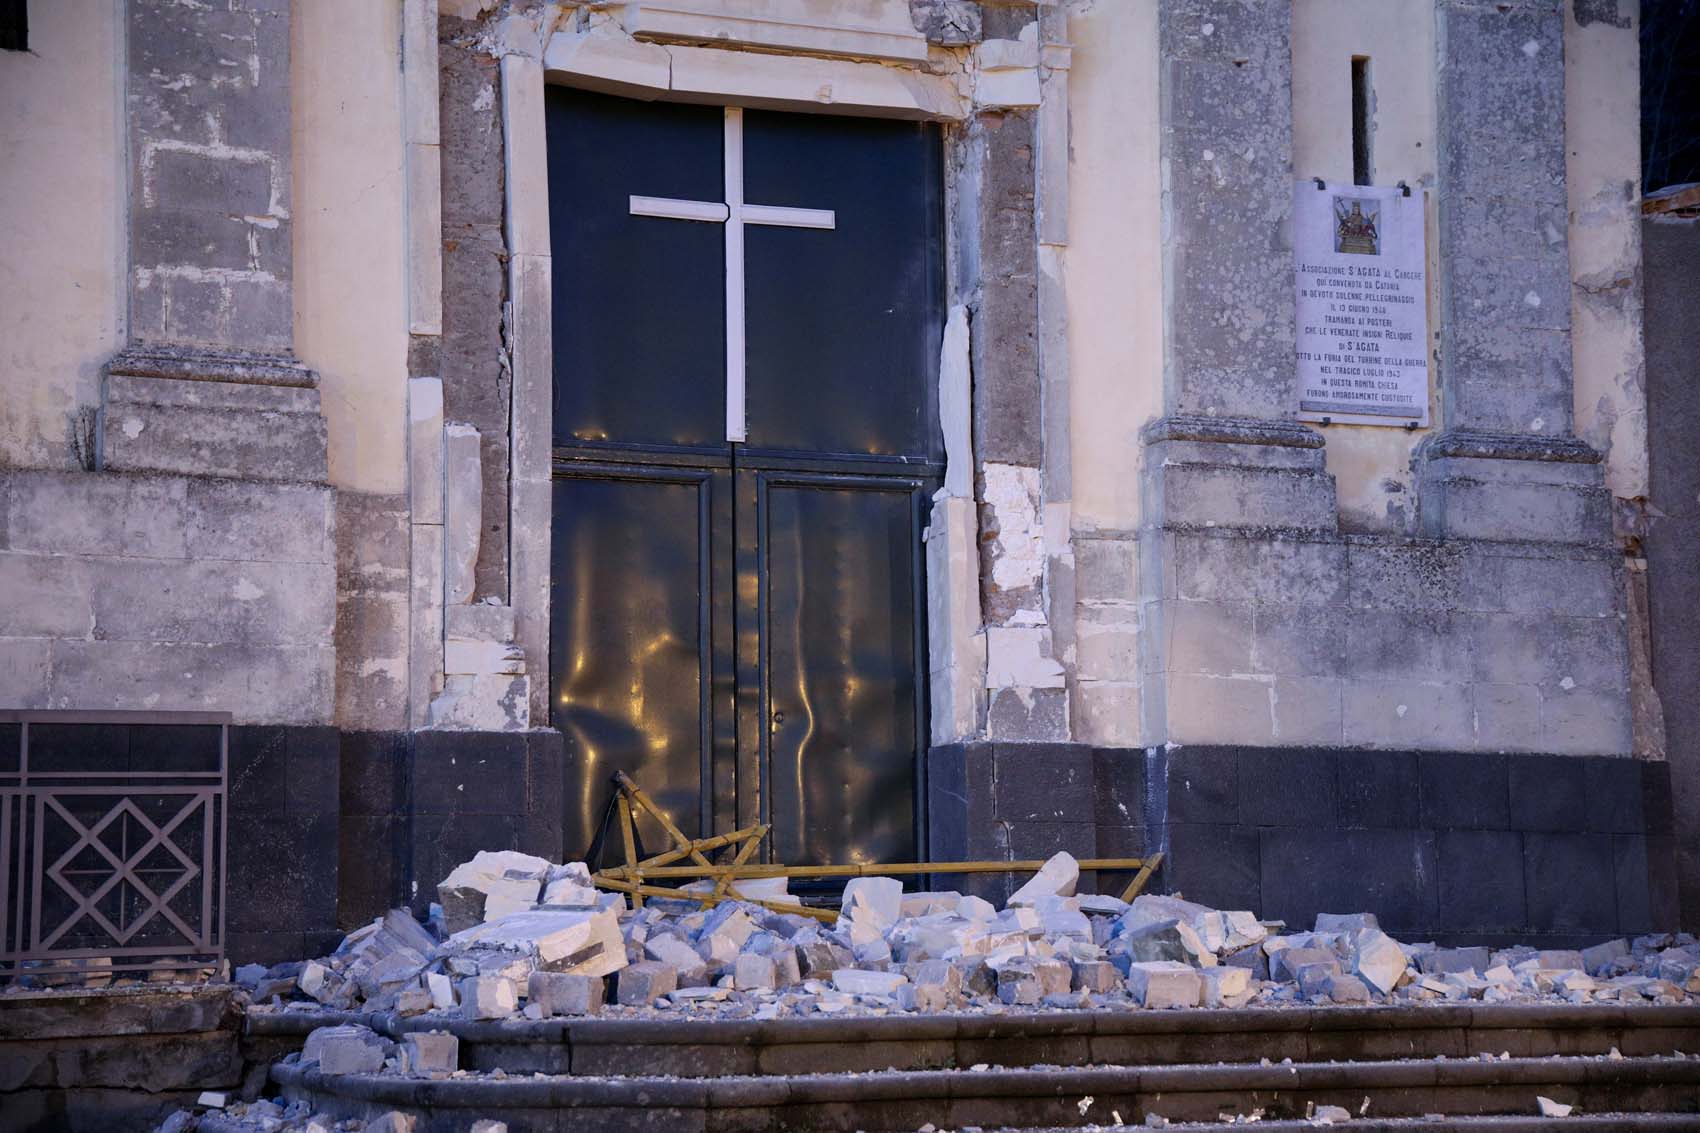 Heridos leves y daños en edificios antiguos dejó terremoto en Sicilia (fotos)